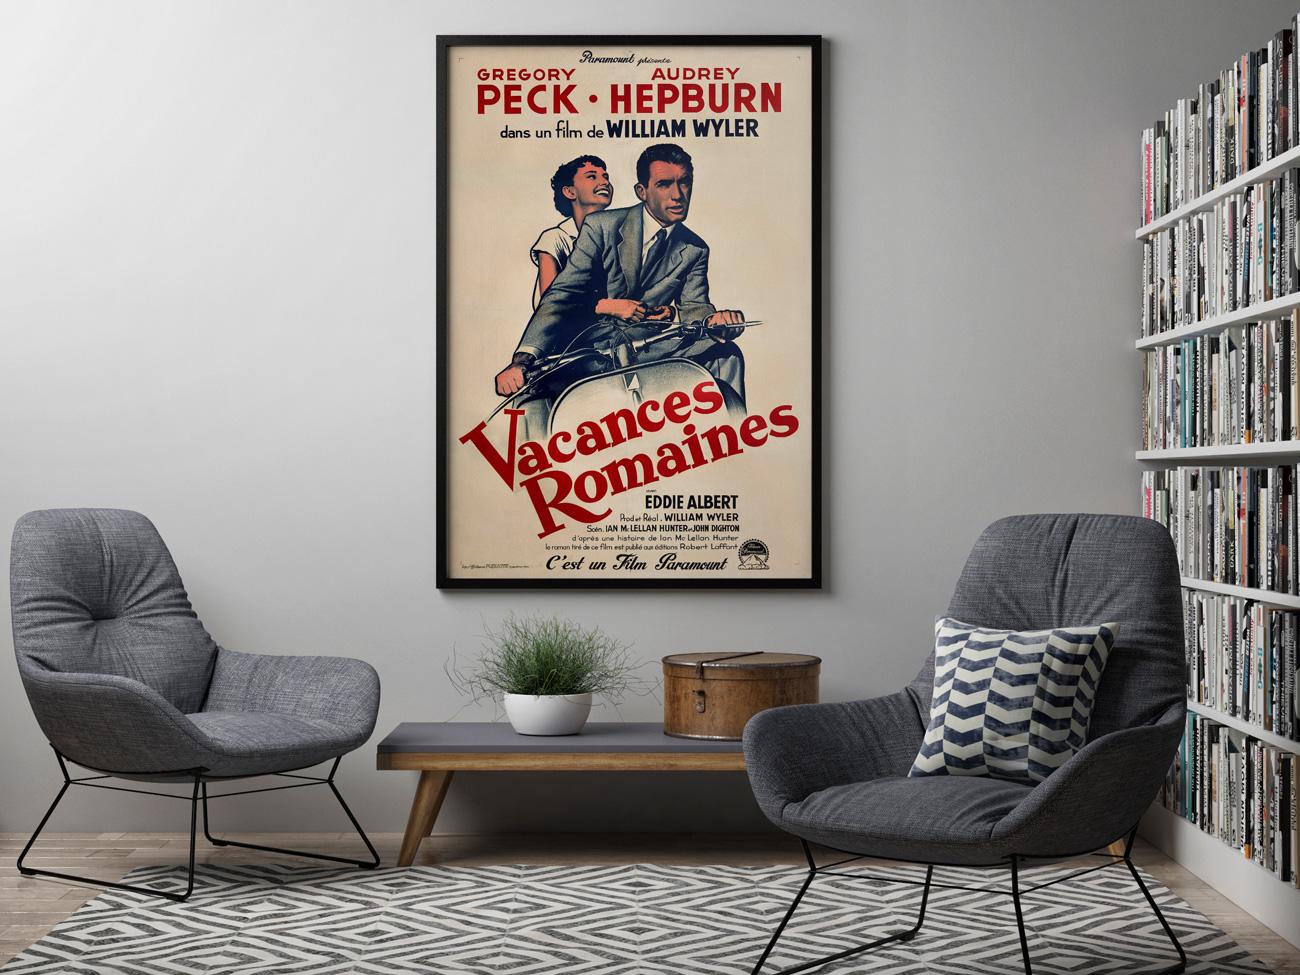 Das schöne französische Plakat der 1960er Jahre für die Neuauflage des Romantik-Klassikers Roman Holiday mit Audrey Hepburn und Gregory Peck in den Hauptrollen.

In Roman Holiday entflieht eine gelangweilte und behütete Prinzessin (Hepbrun) ihren